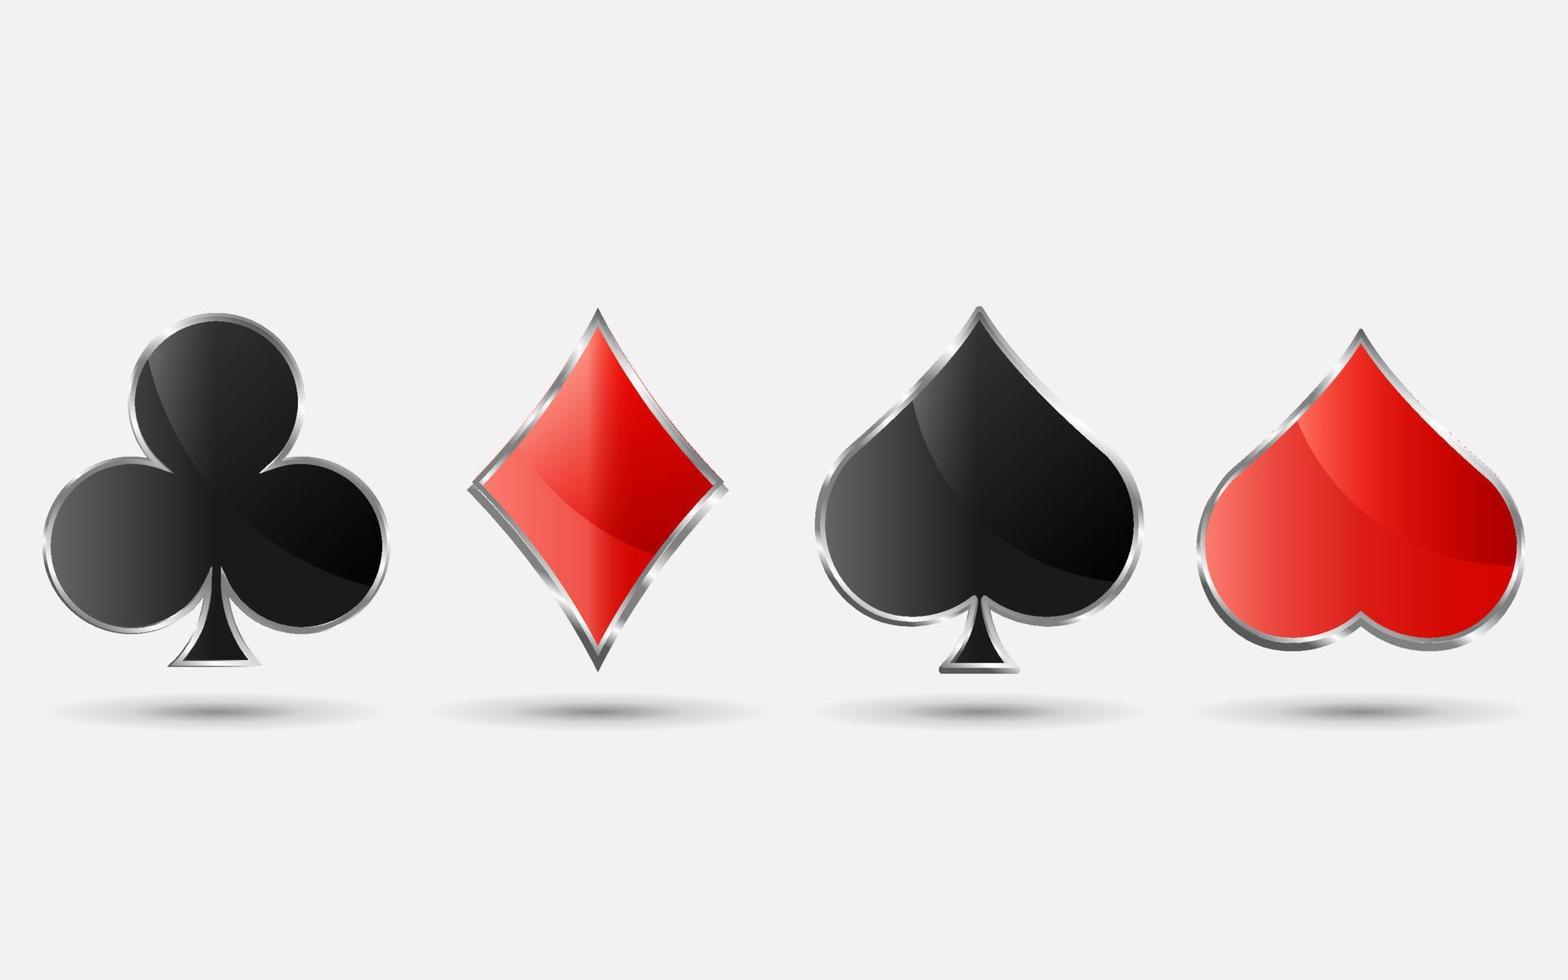 Spielkartenanzüge, Pik, Herz, Club und Diamantvektorset für Ihr Design oder Logo. realistische deckkarten lokalisiert auf weißem hintergrund. vektor